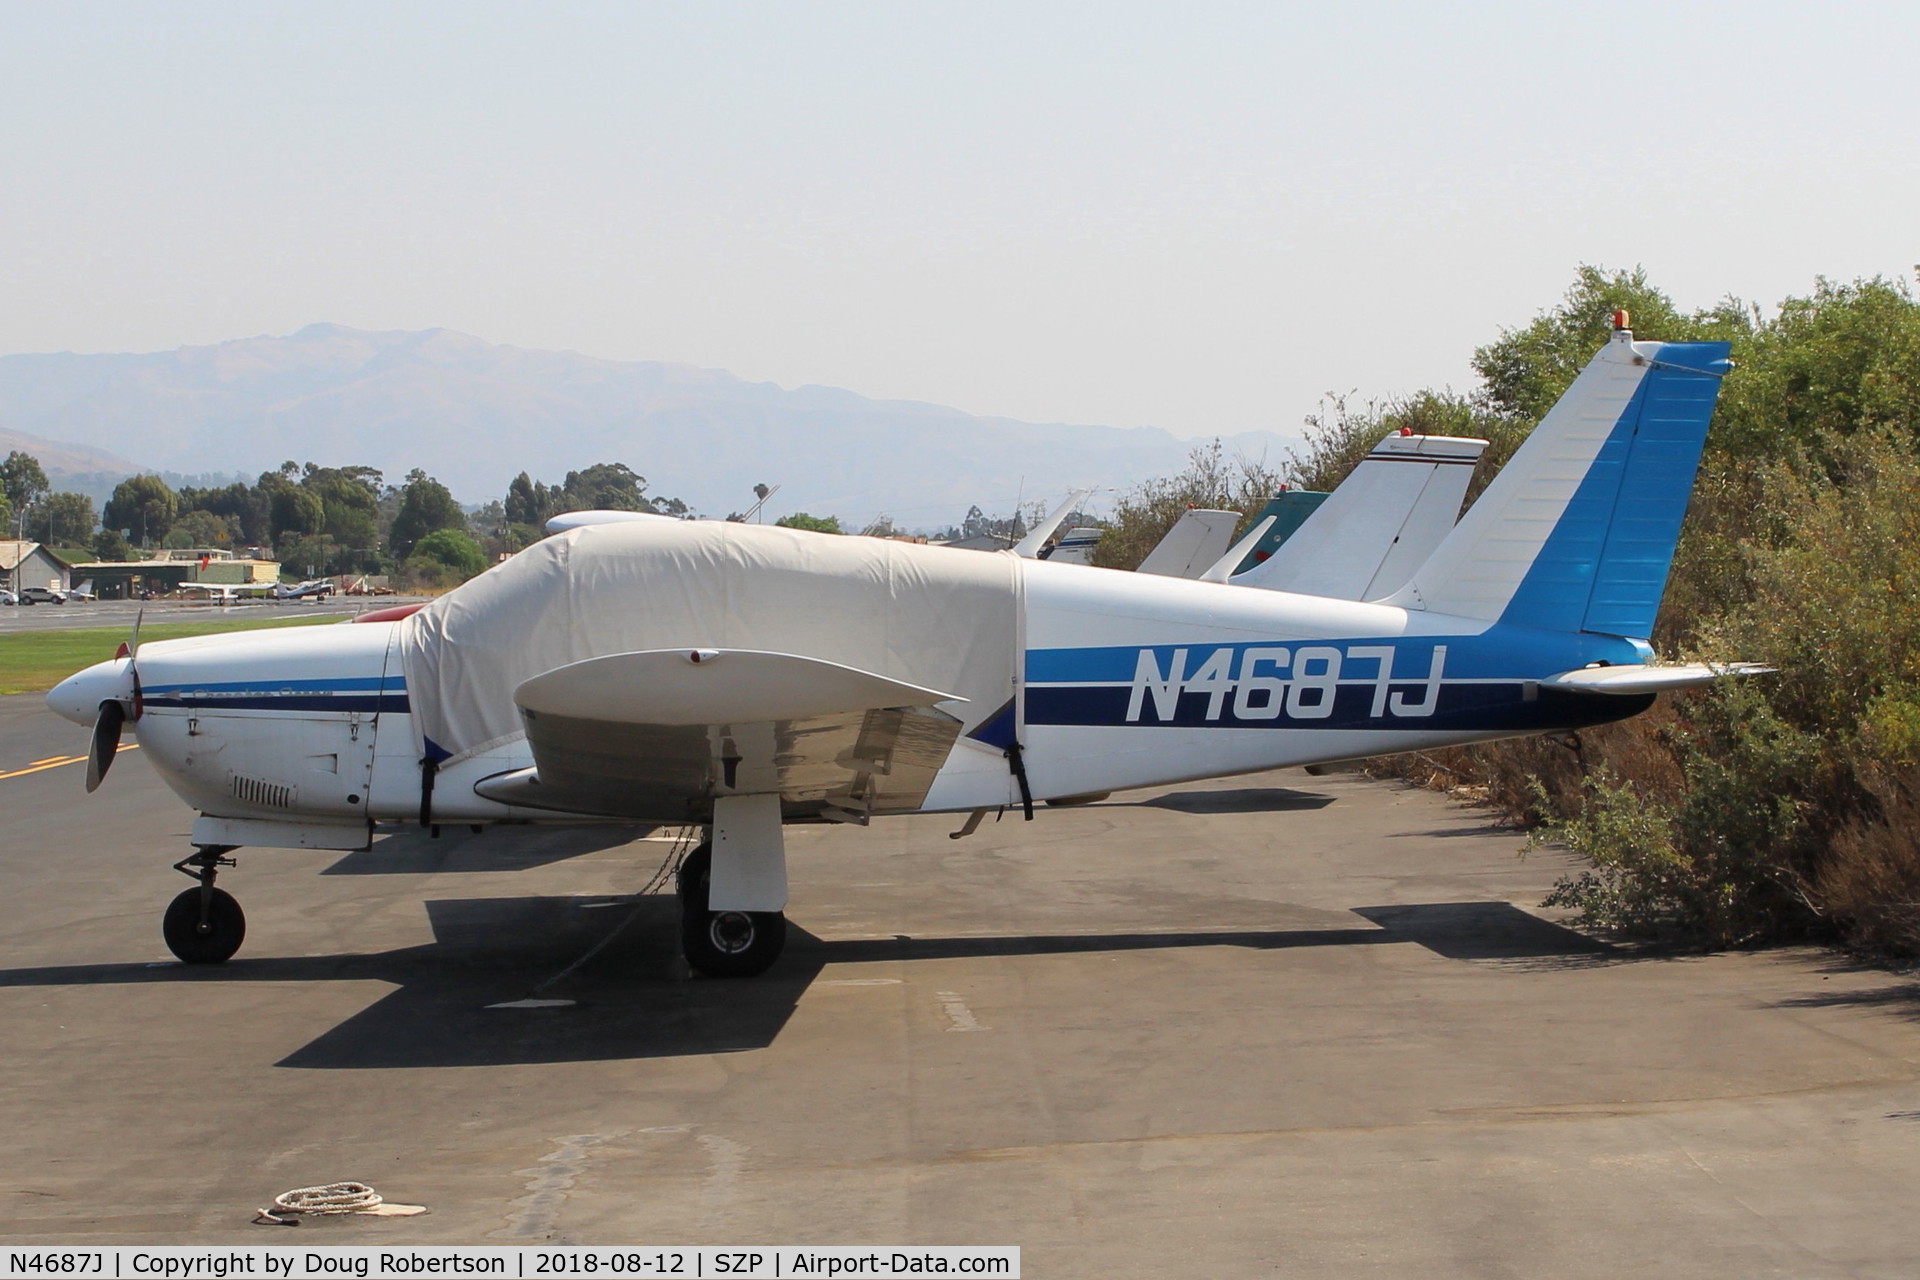 N4687J, 1968 Piper PA-28R-180 Cherokee Arrow C/N 28R-30589, 1968 Piper PA-28R-180 ARROW, Lycoming IO-360 180 Hp, retractable landing gear